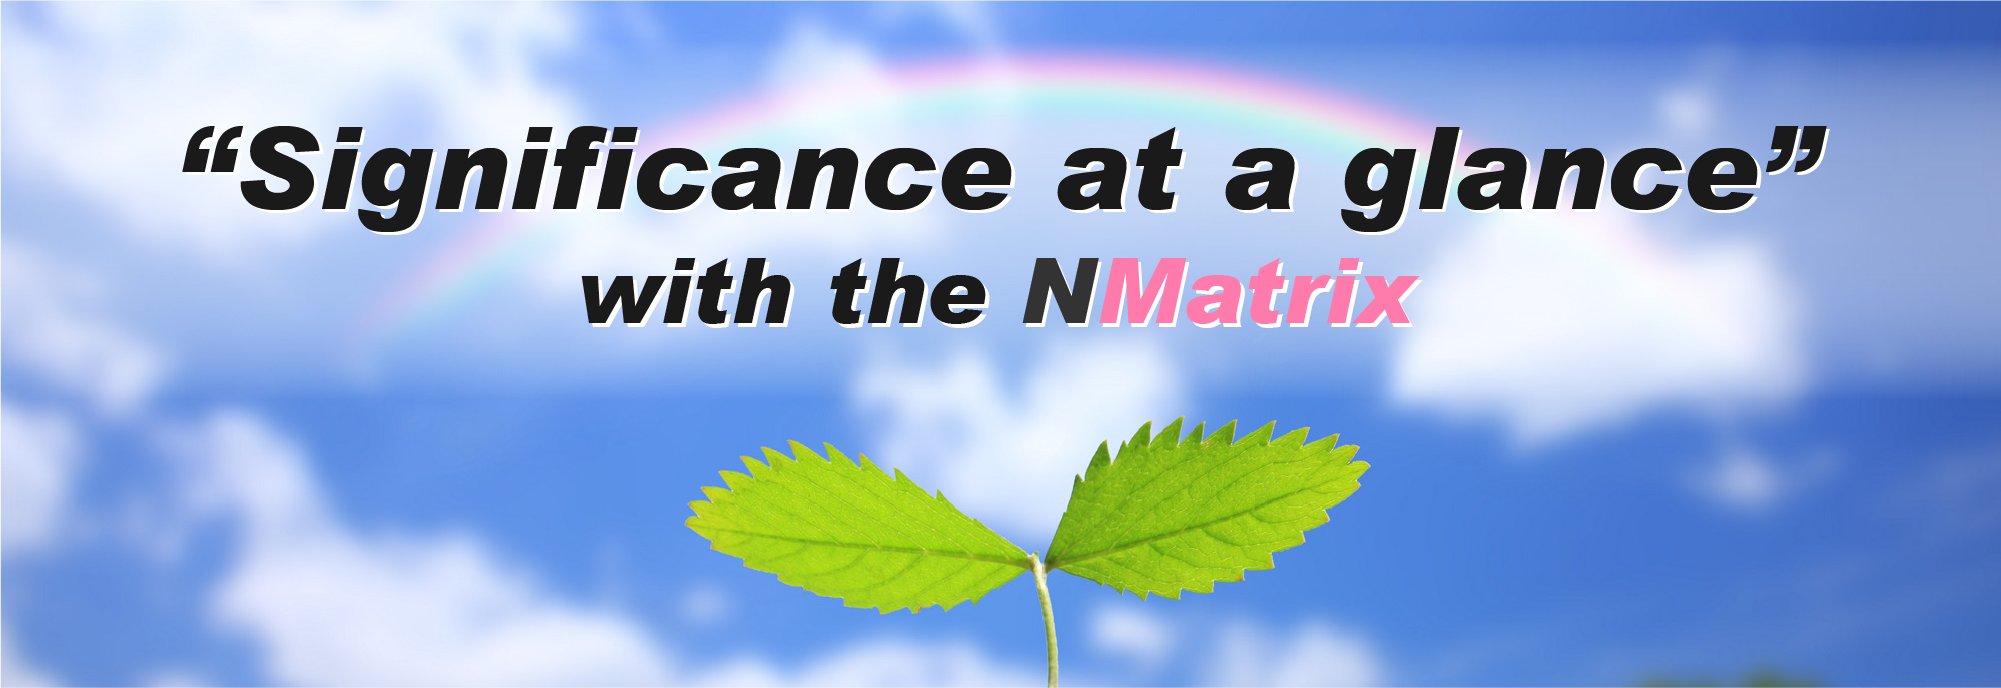 NMatrix｜新しい統計表示法